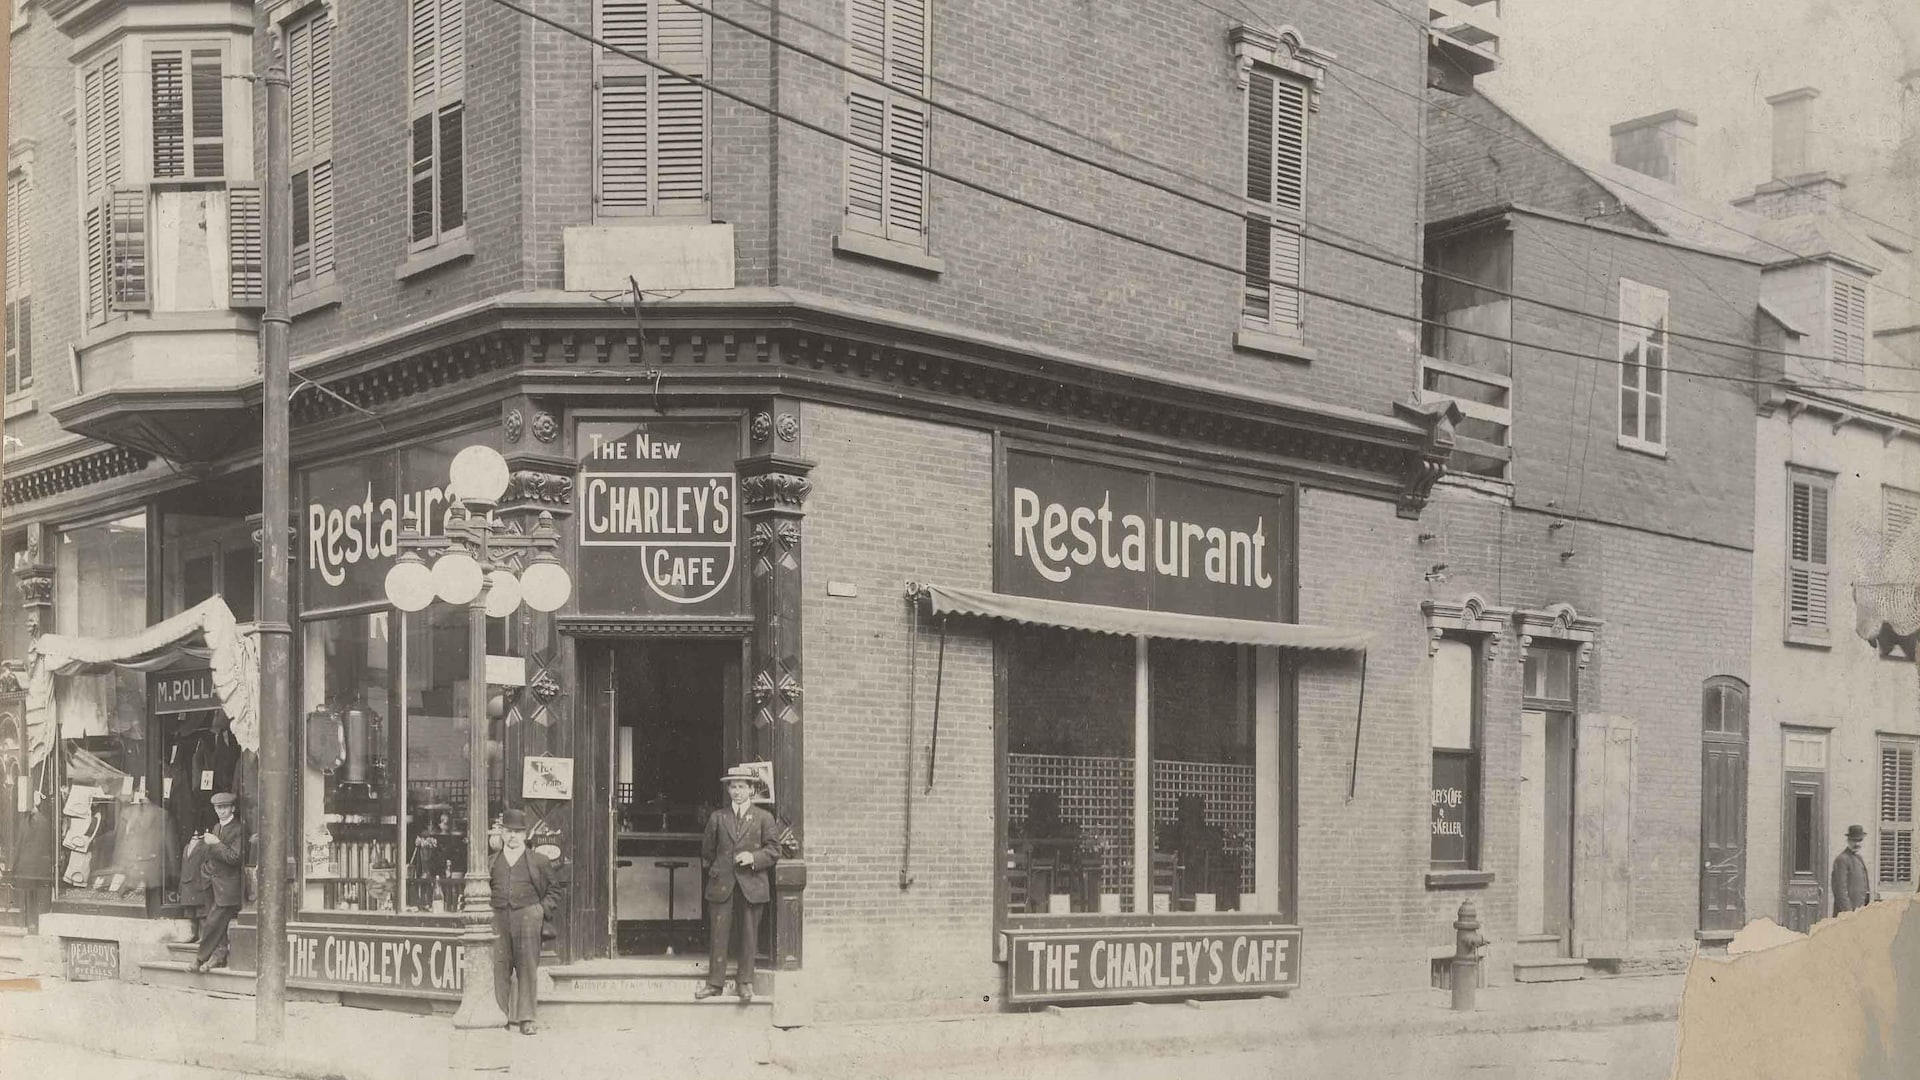 L'un des premiers magasins Pollack, sur la rue Saint-Joseph, dans les années 1920. On voit le Charley's Cafe juste à côté.